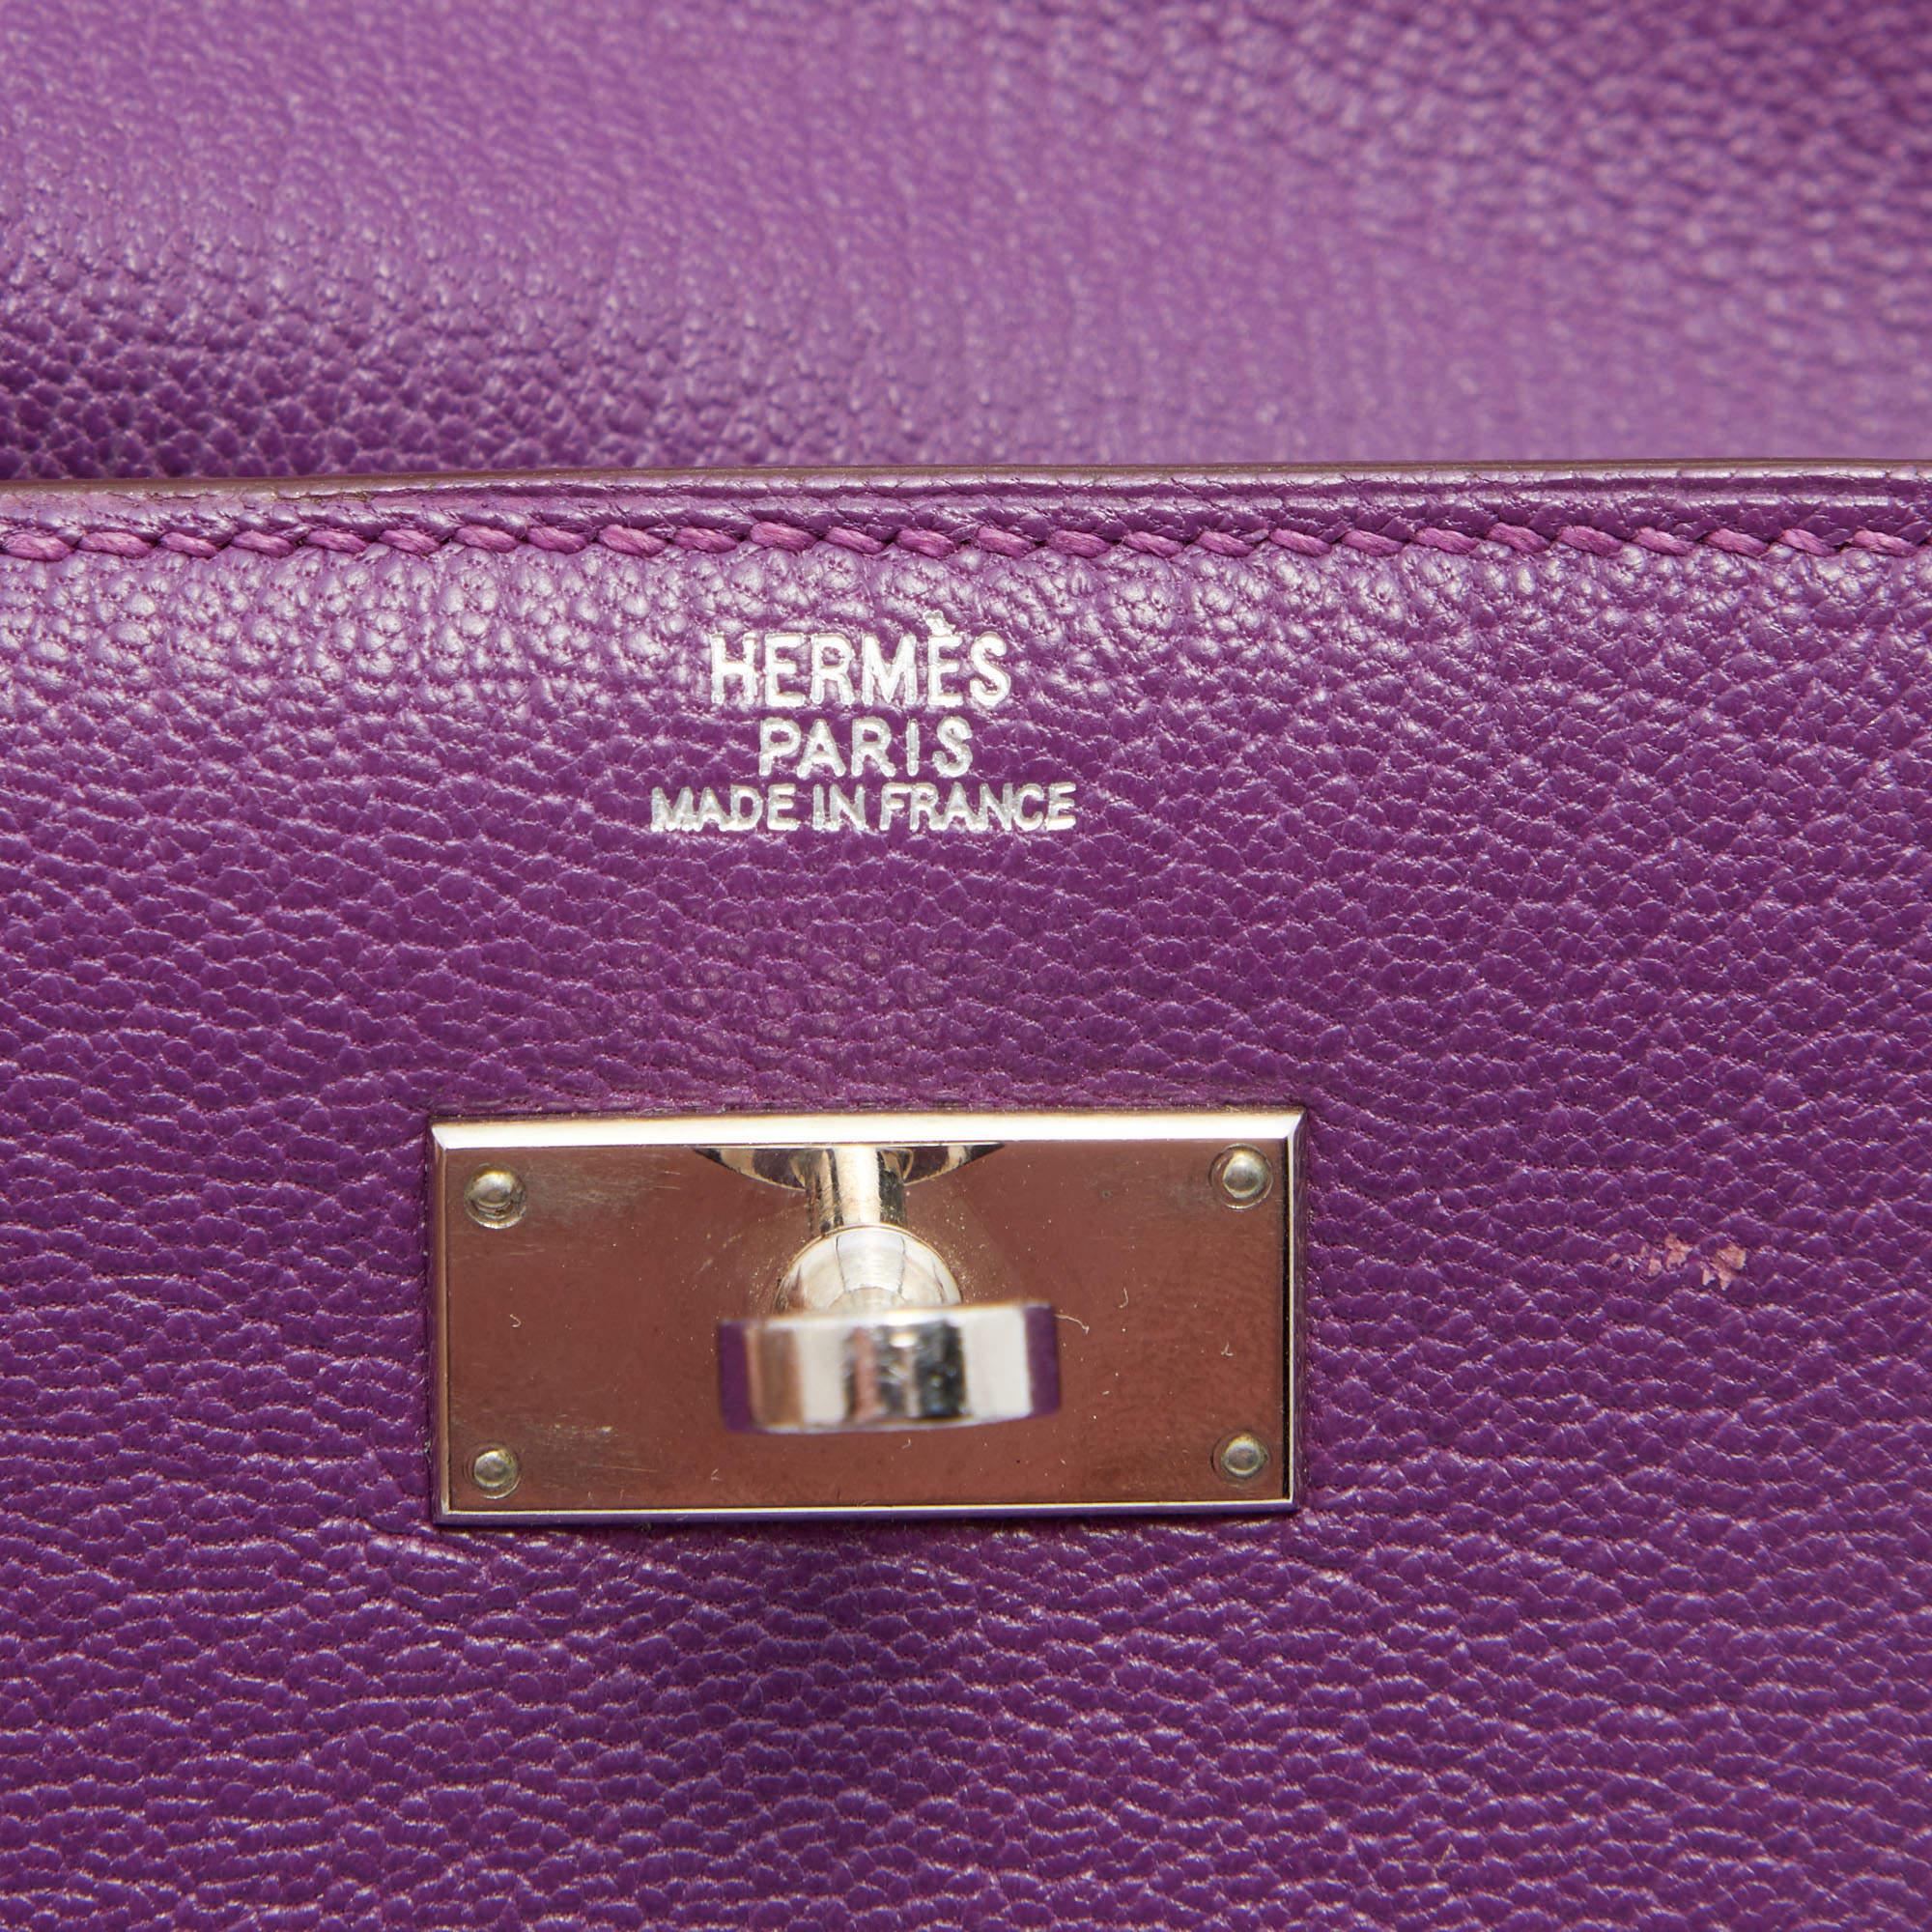 Women's Hermès Anemone Chevre Leather Kelly Depliant Wallet